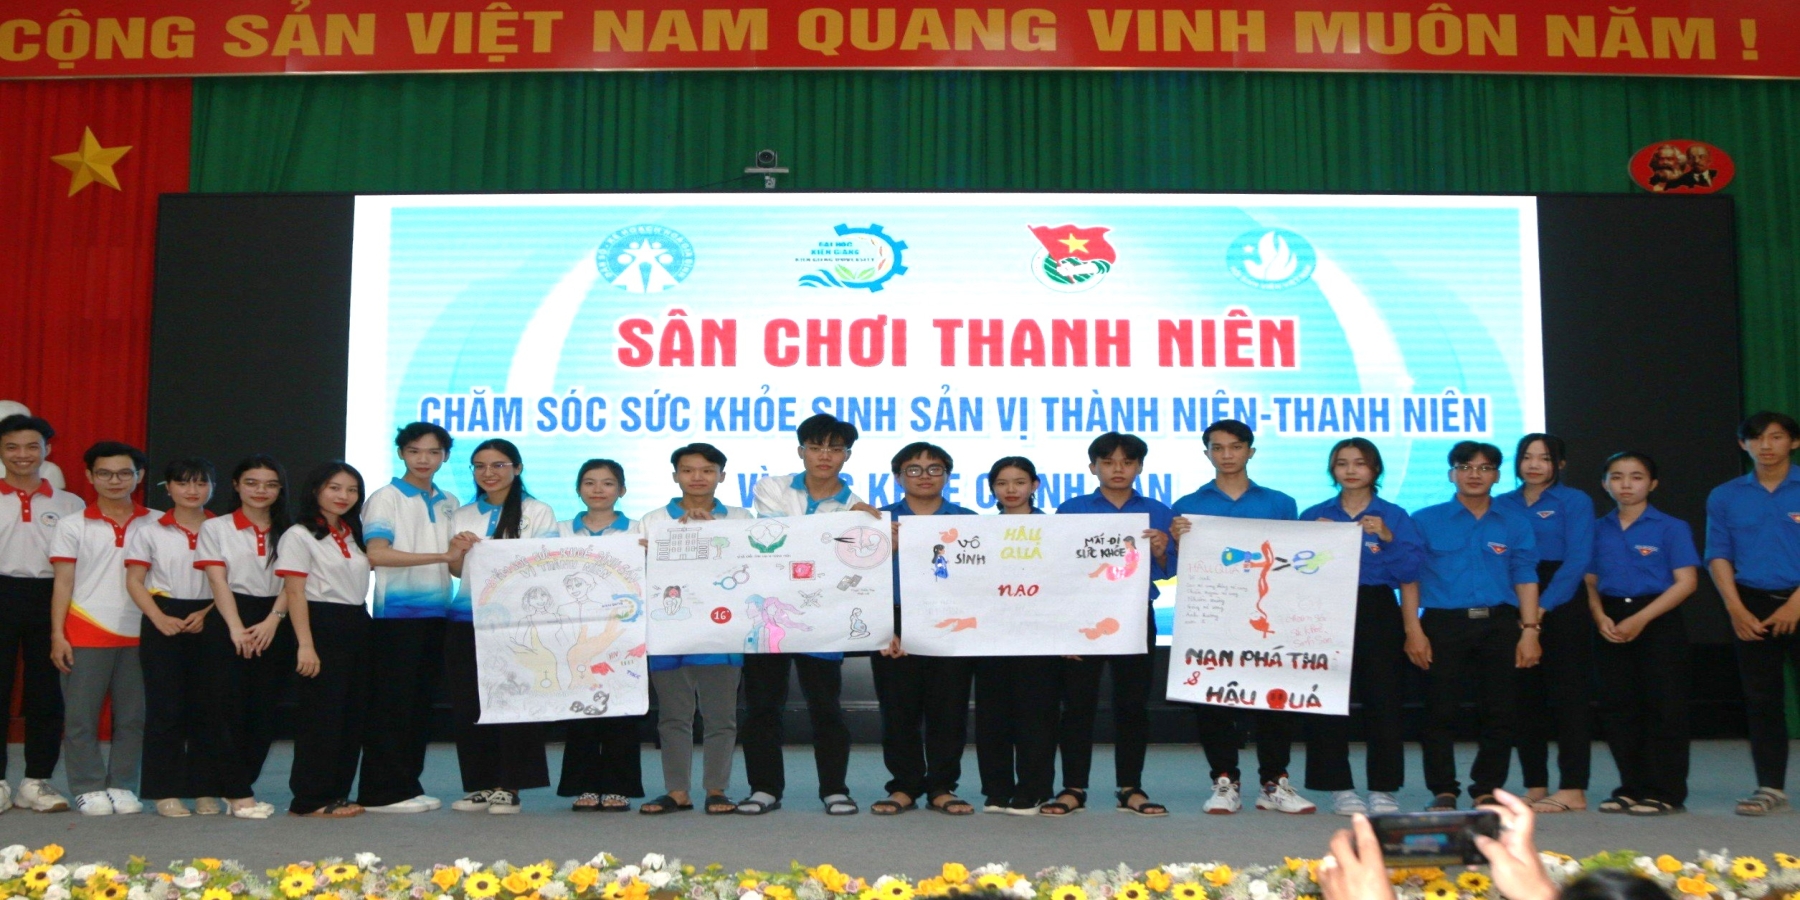 Đoàn viên, thanh niên Trường Đại học Kiên Giang tìm hiểu sức khỏe sinh sản